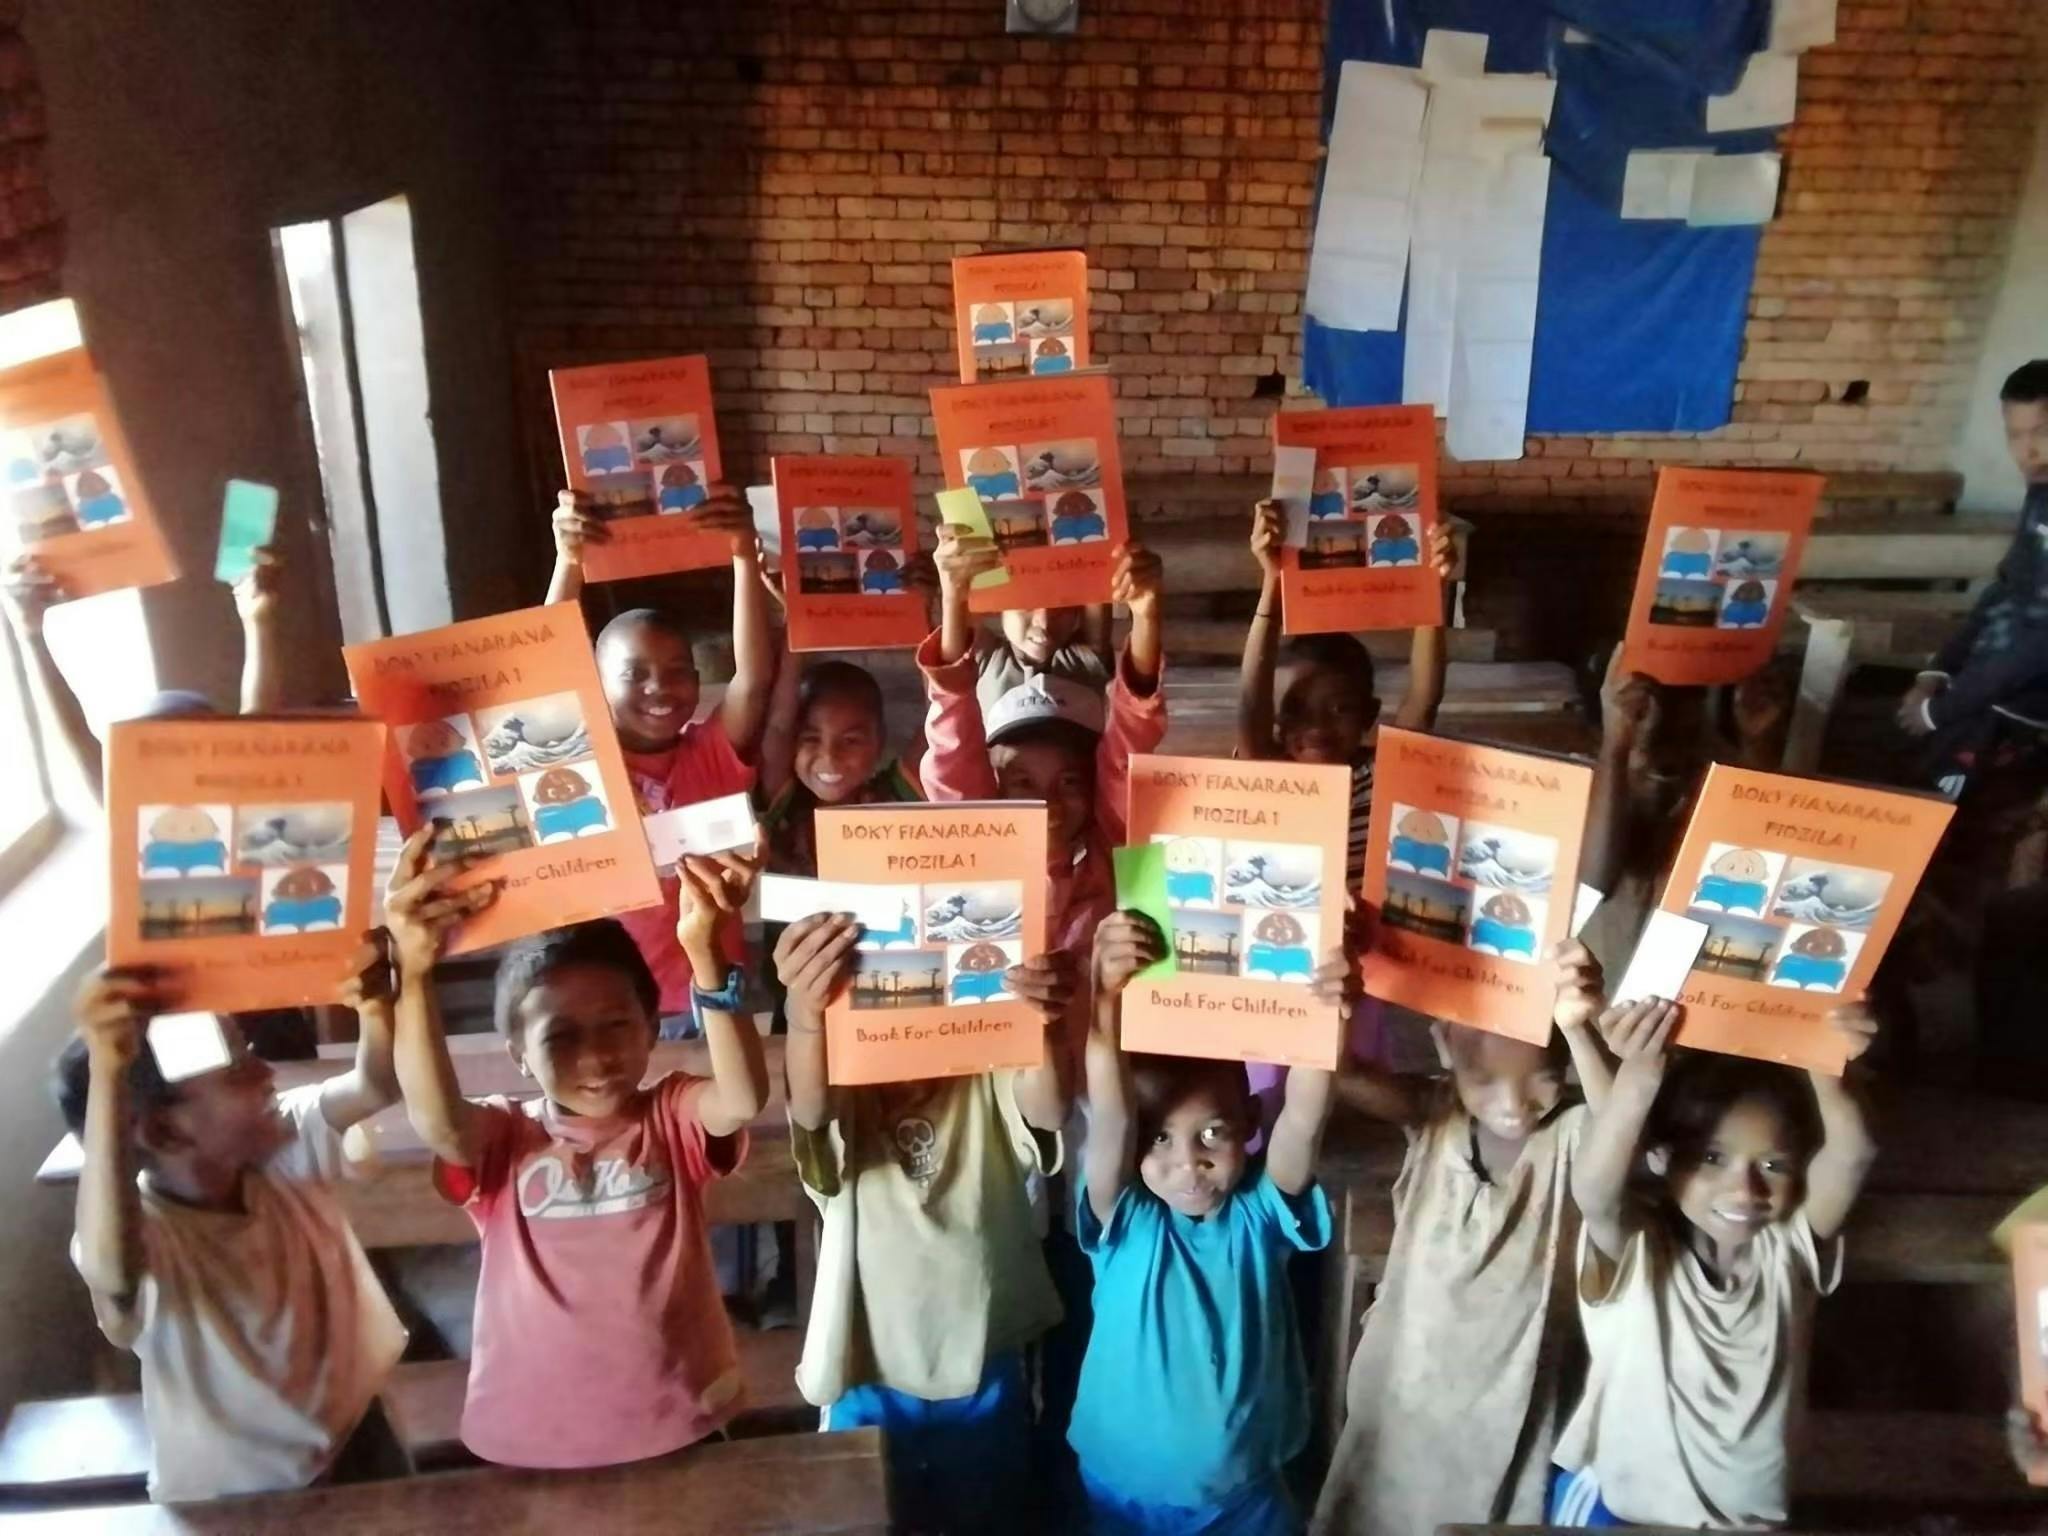 マダガスカルの子供たちに教科書を届けたい Book For Children Campfire キャンプファイヤー